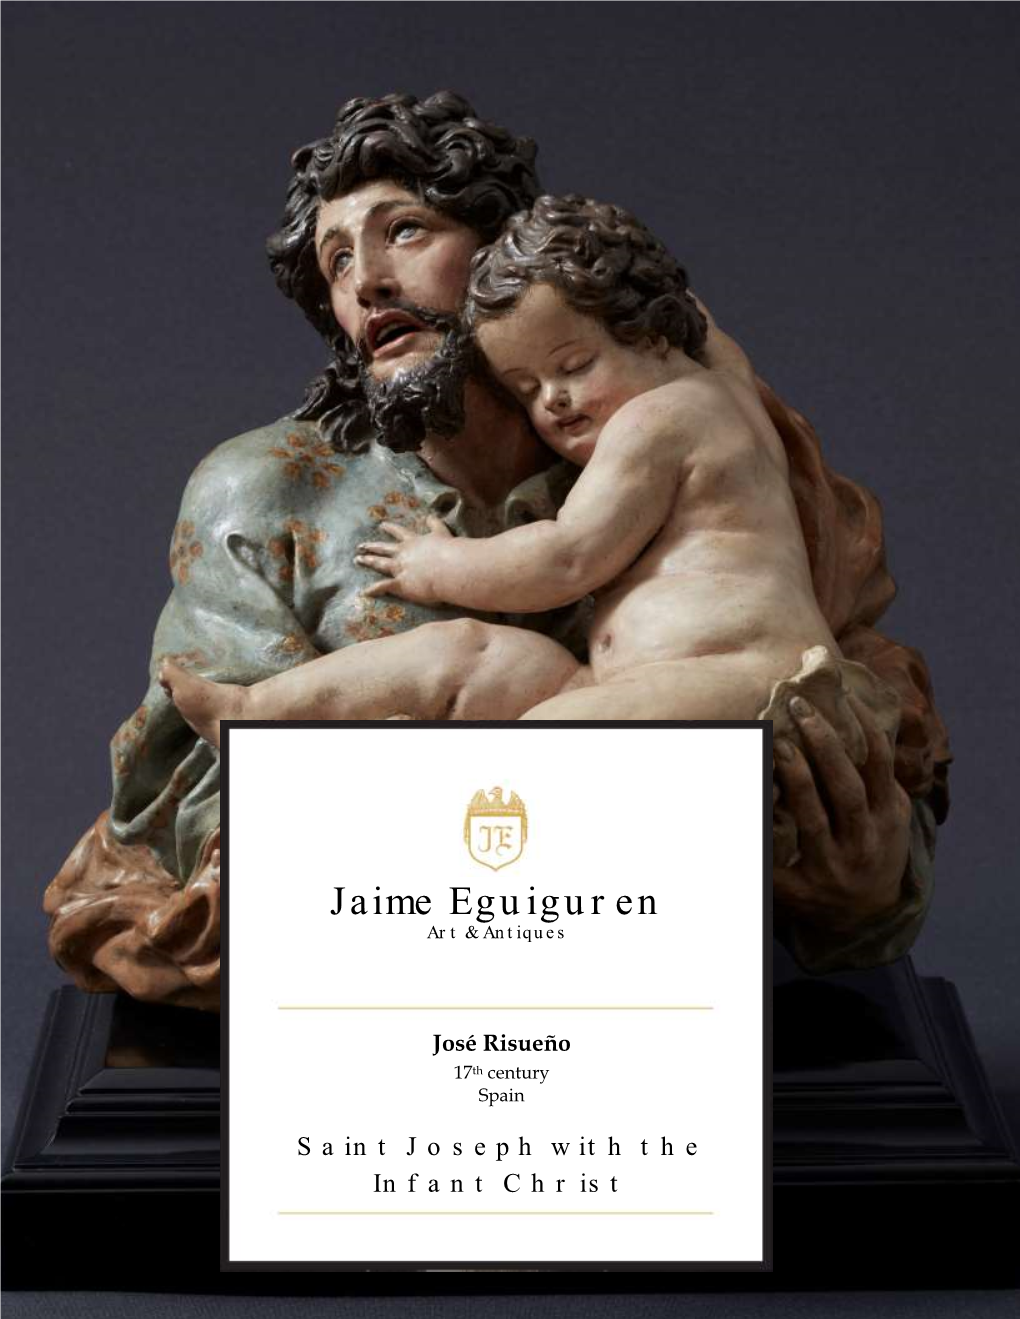 Jaime Eguiguren Art & Antiques